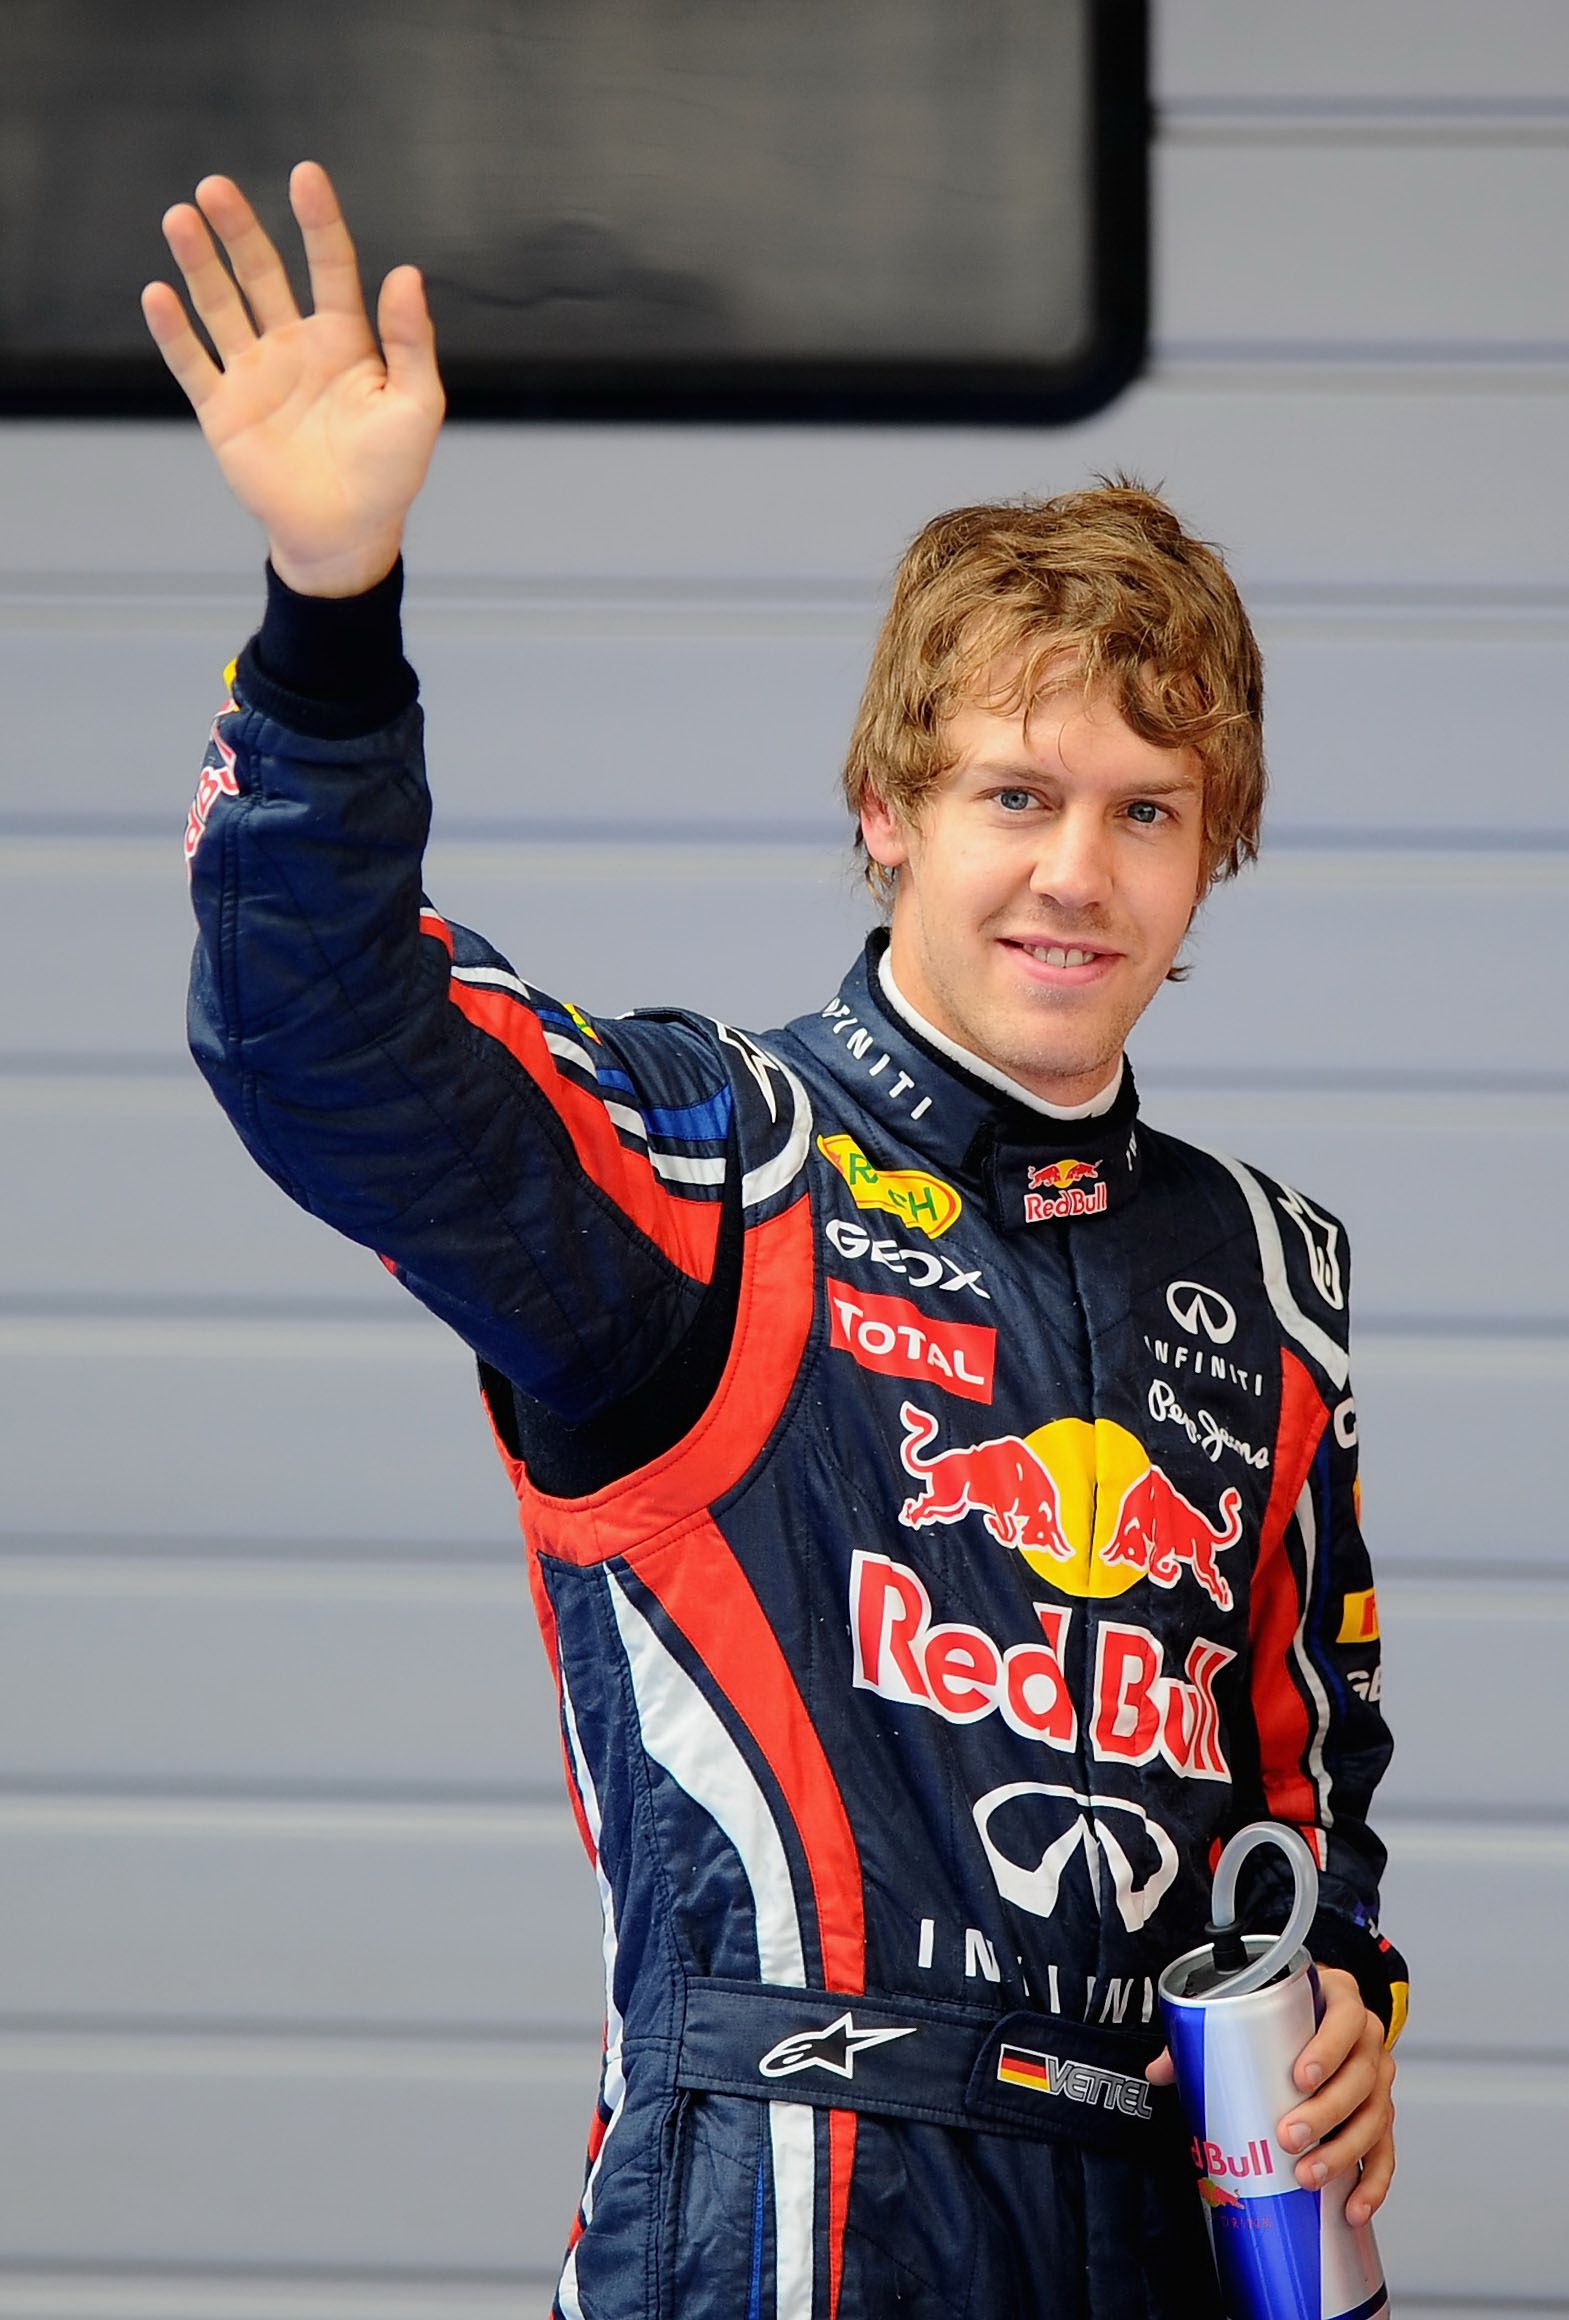 Vettel 2010-ben még így nézett ki, amikor az első vb-címét szerezte a Red Bull-lal/ Fotó: GettyImages